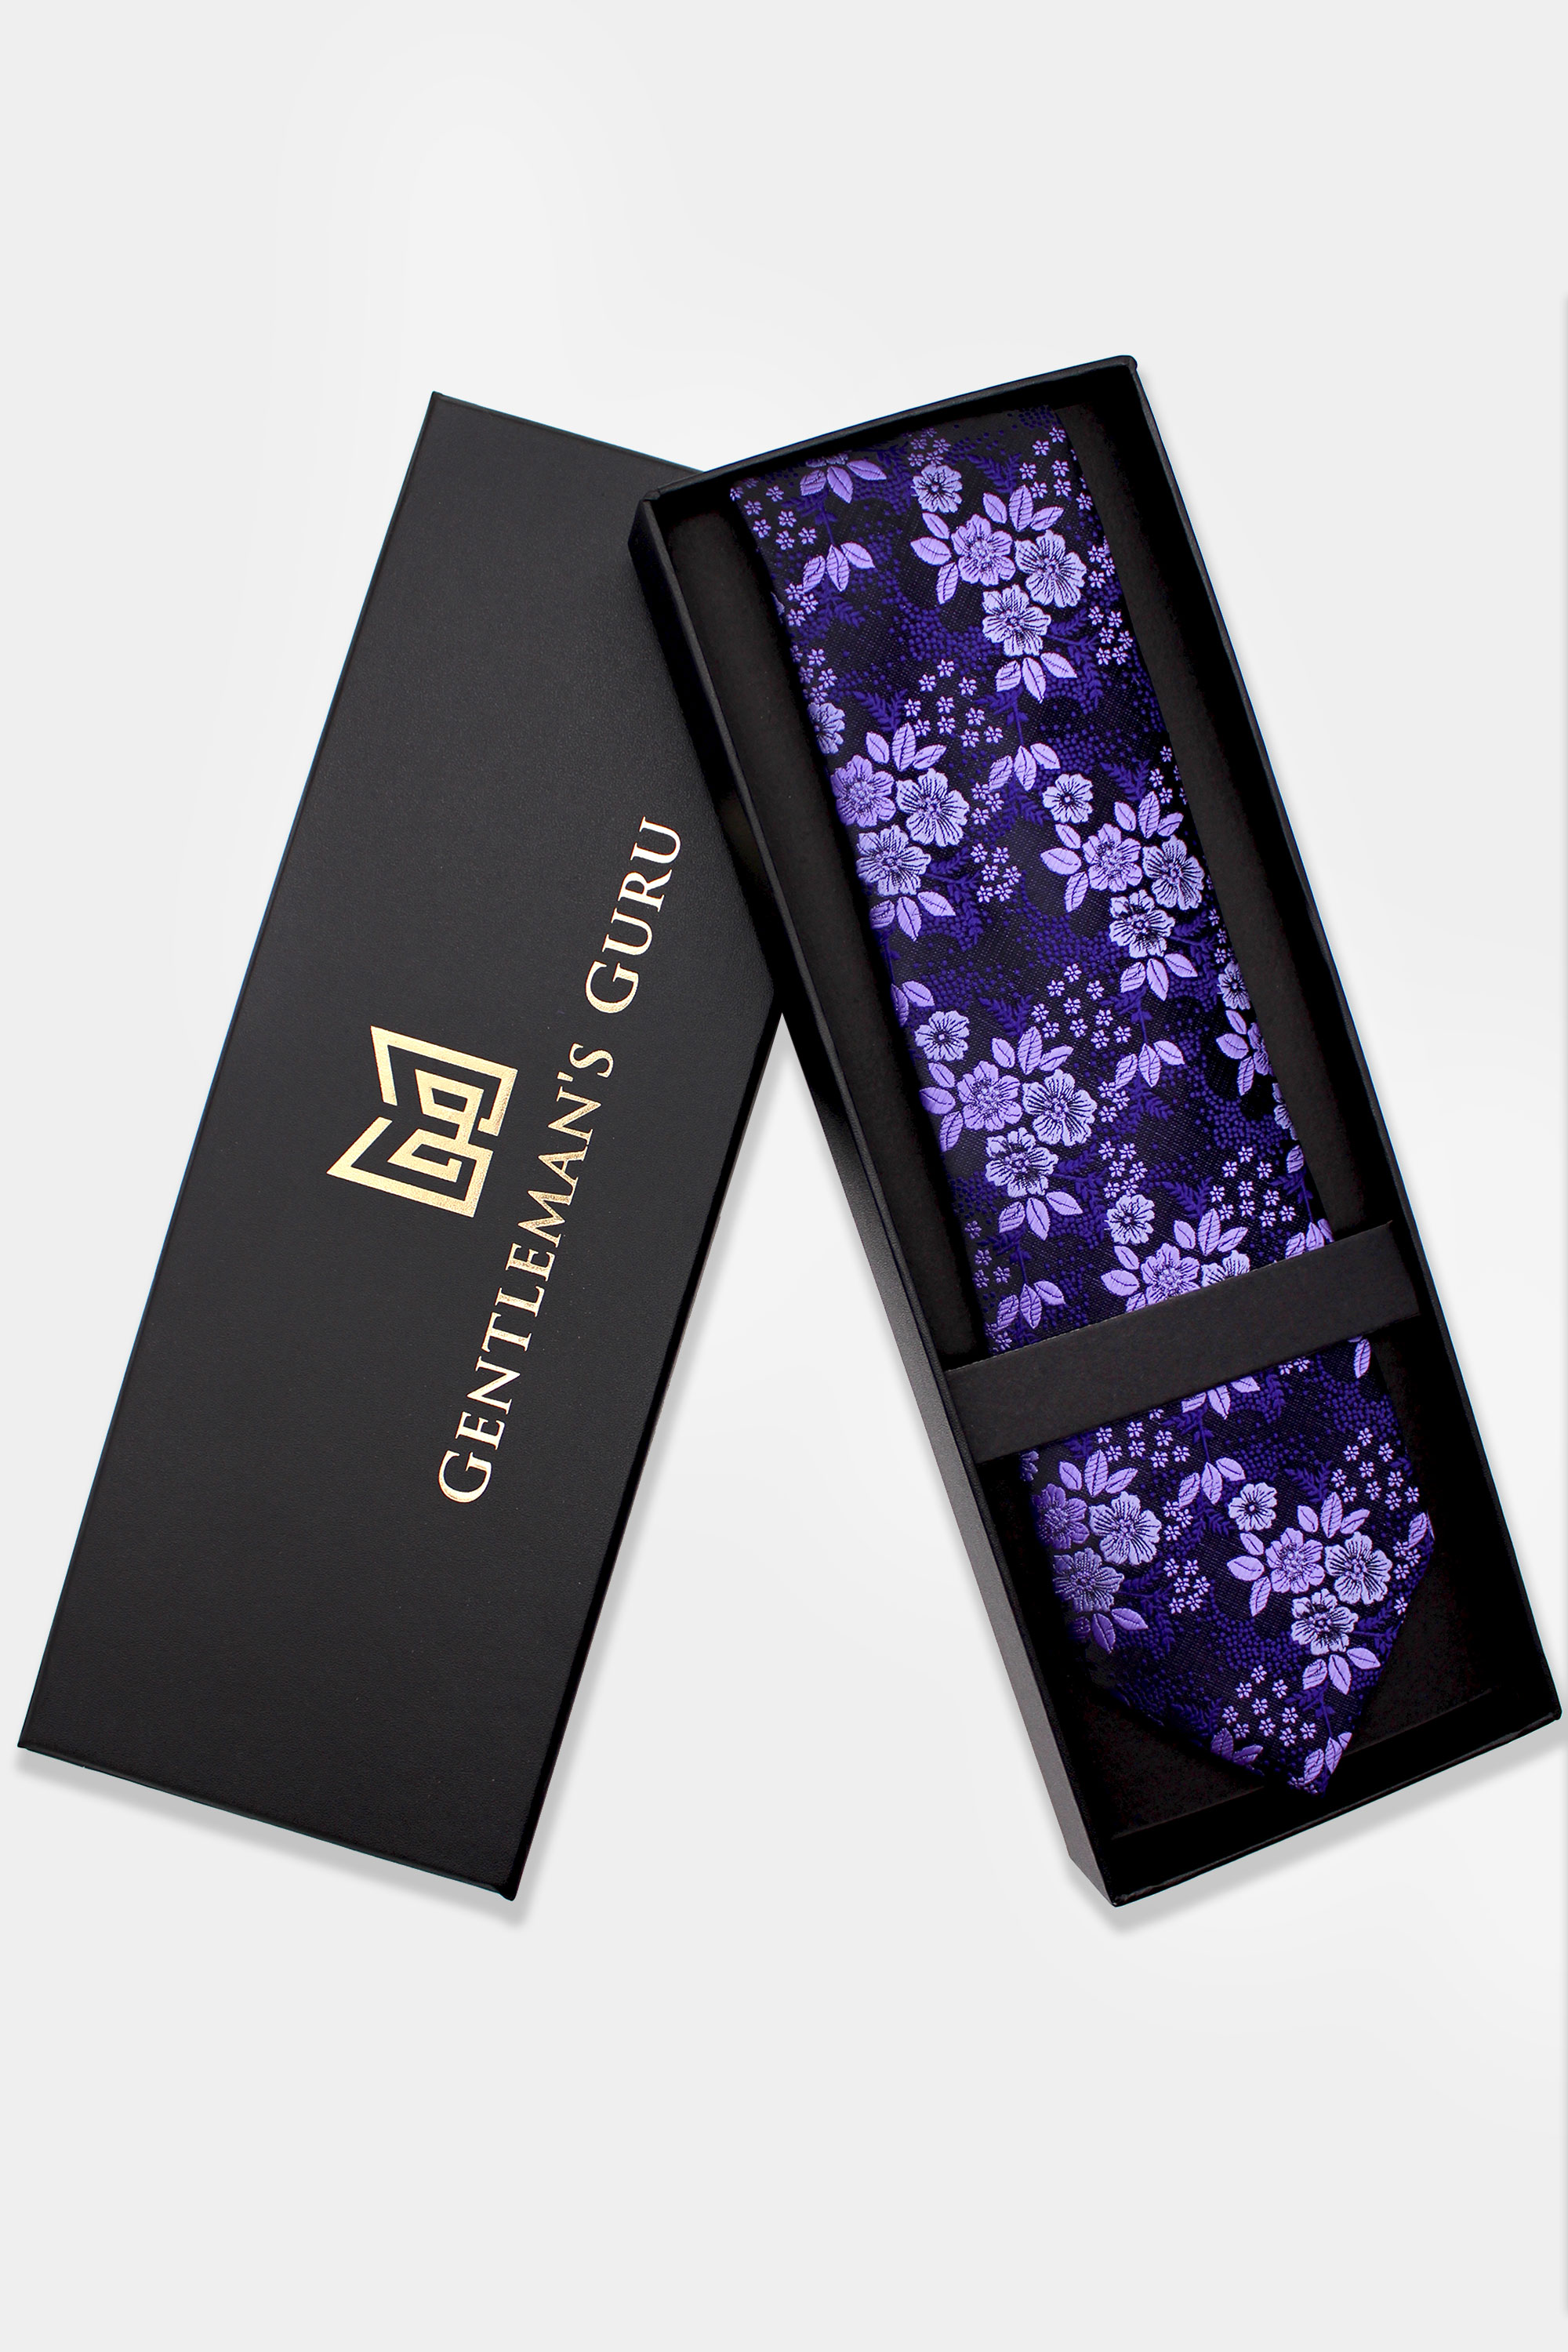 Purple-Floral-Necktie-Lavender-Tie-Wedding-from-Gentlemansguru.com